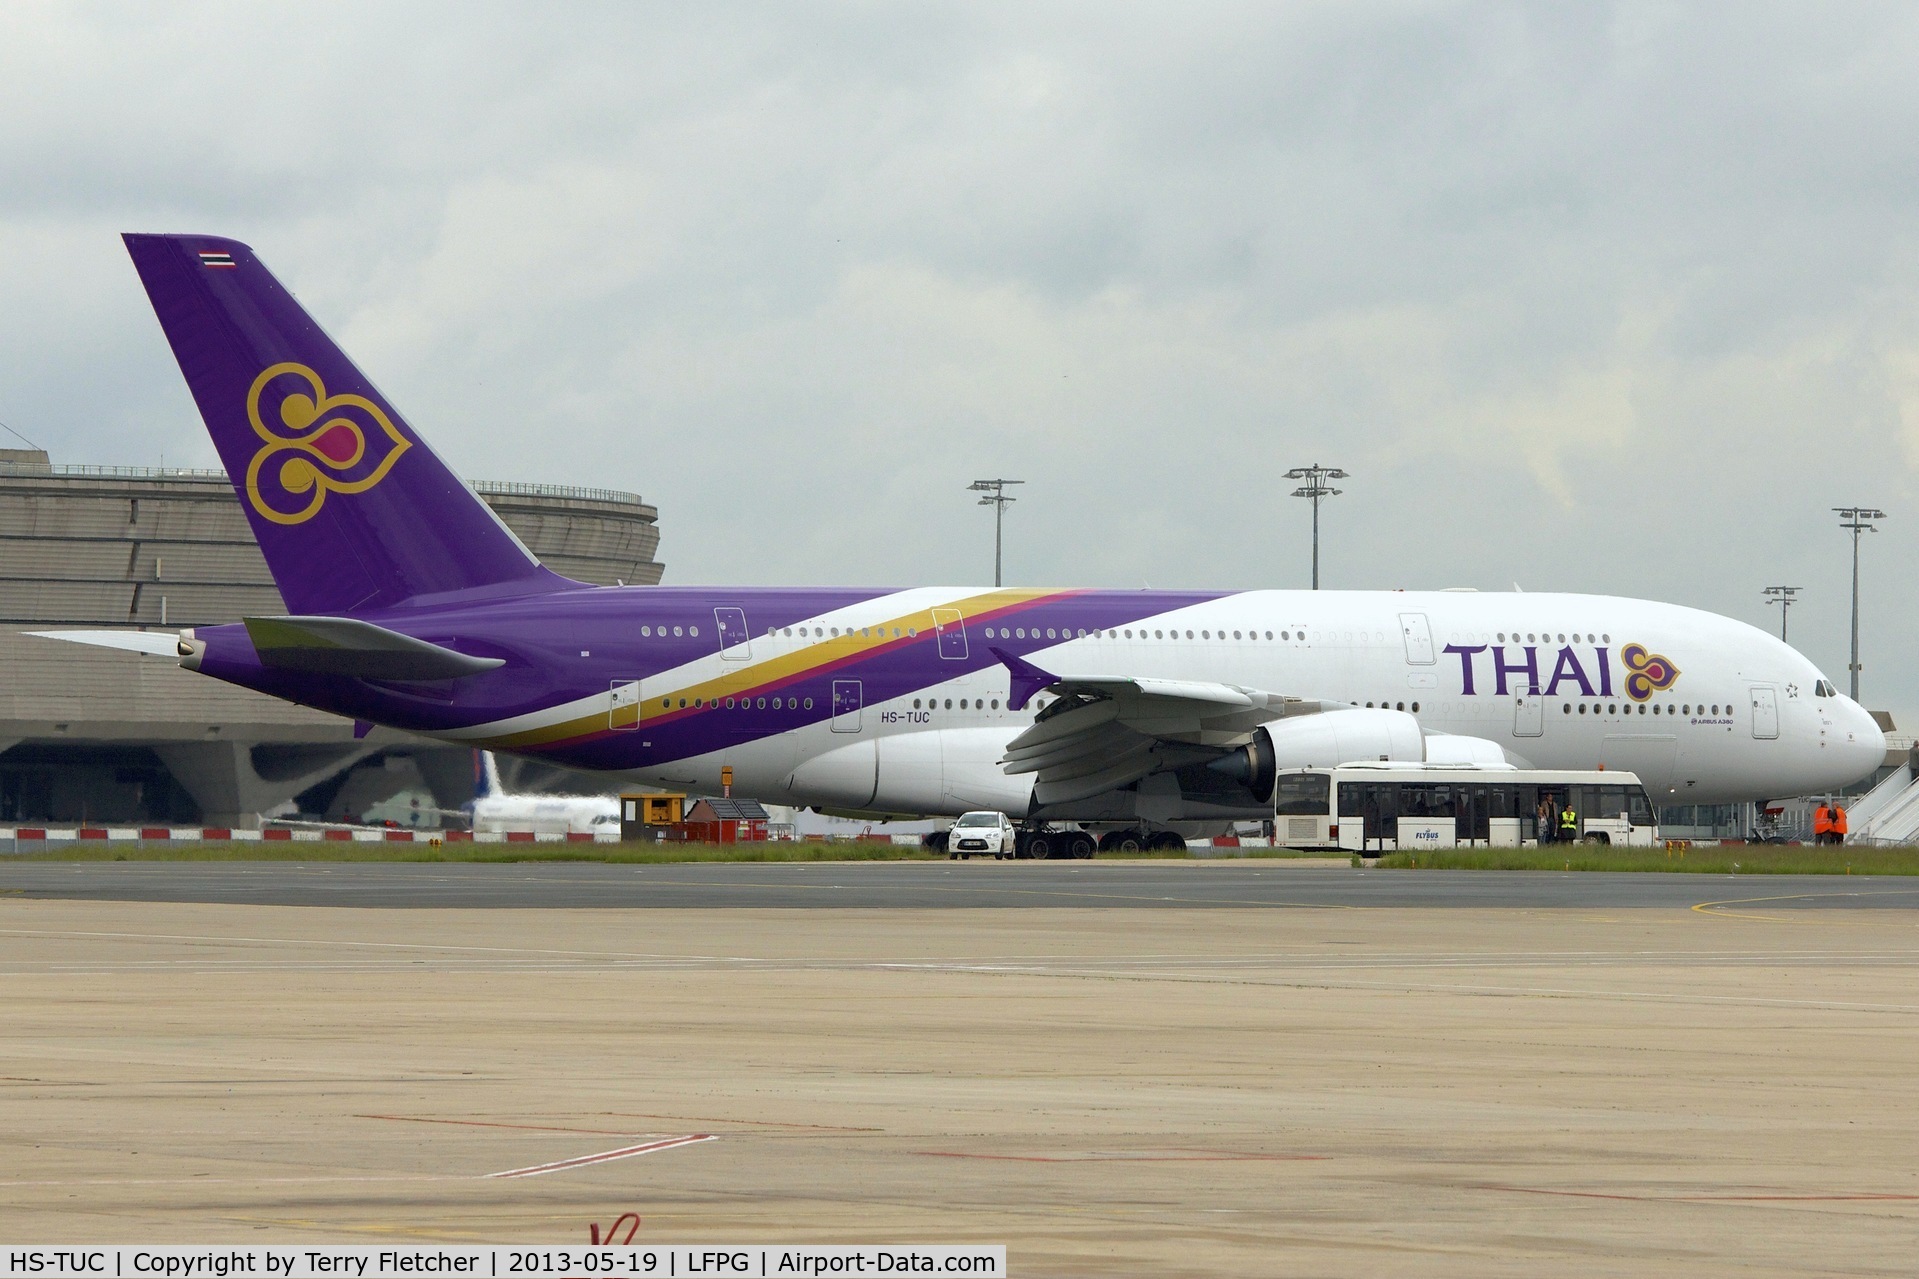 HS-TUC, 2012 Airbus A380-841 C/N 100, Thai Airways S-TUC (Chaiya), 2012 Airbus A380-841, c/n: 100